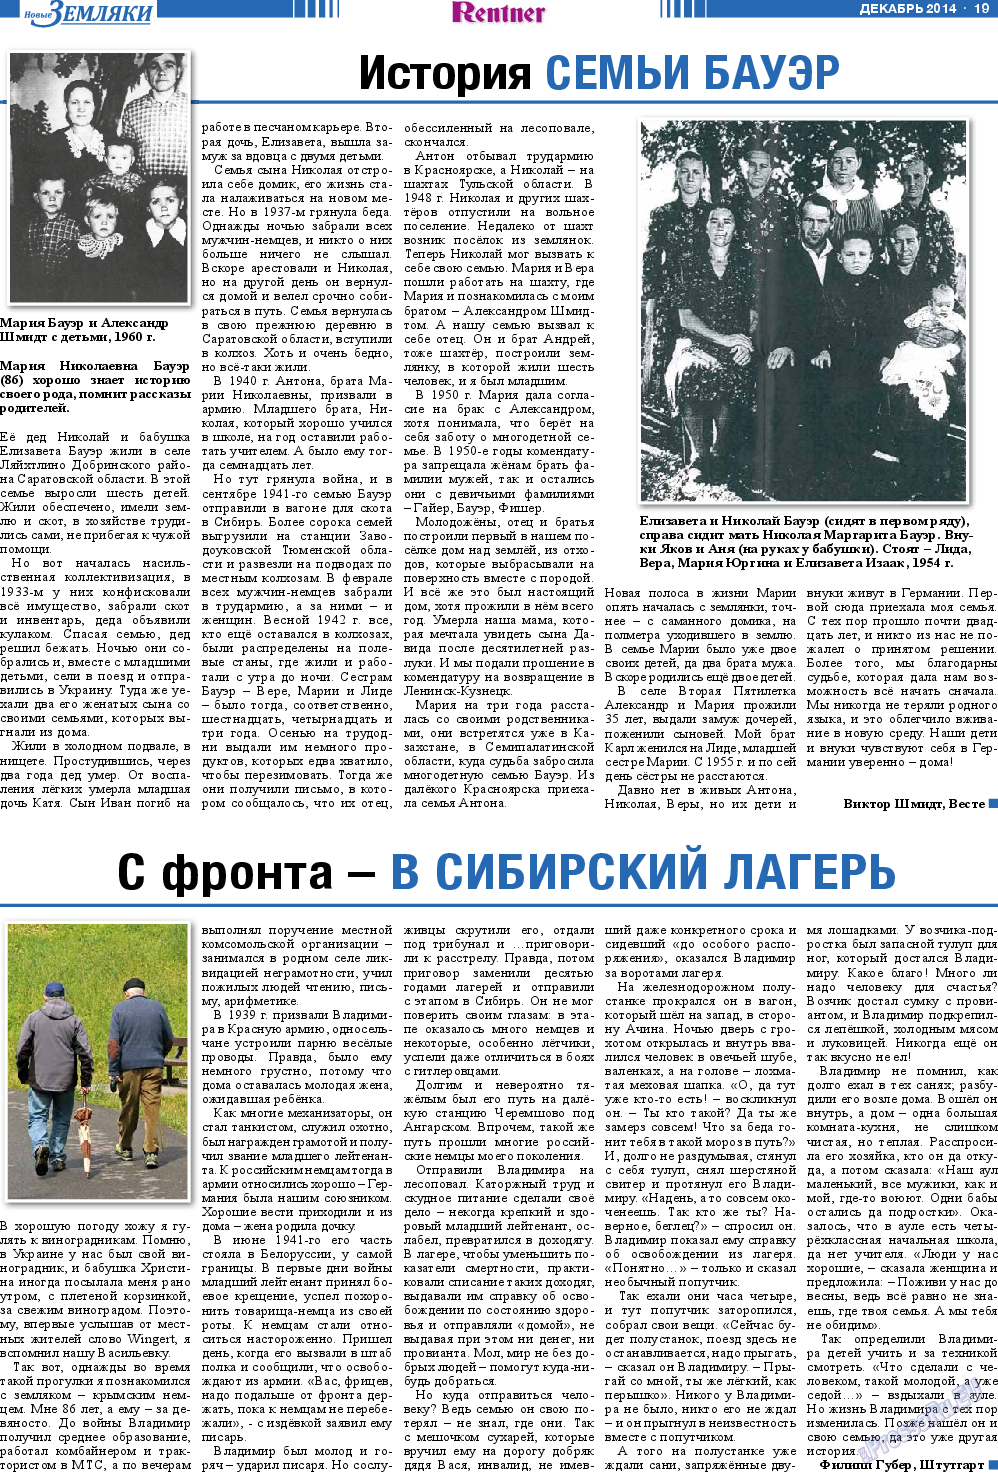 Новые Земляки, газета. 2014 №12 стр.19